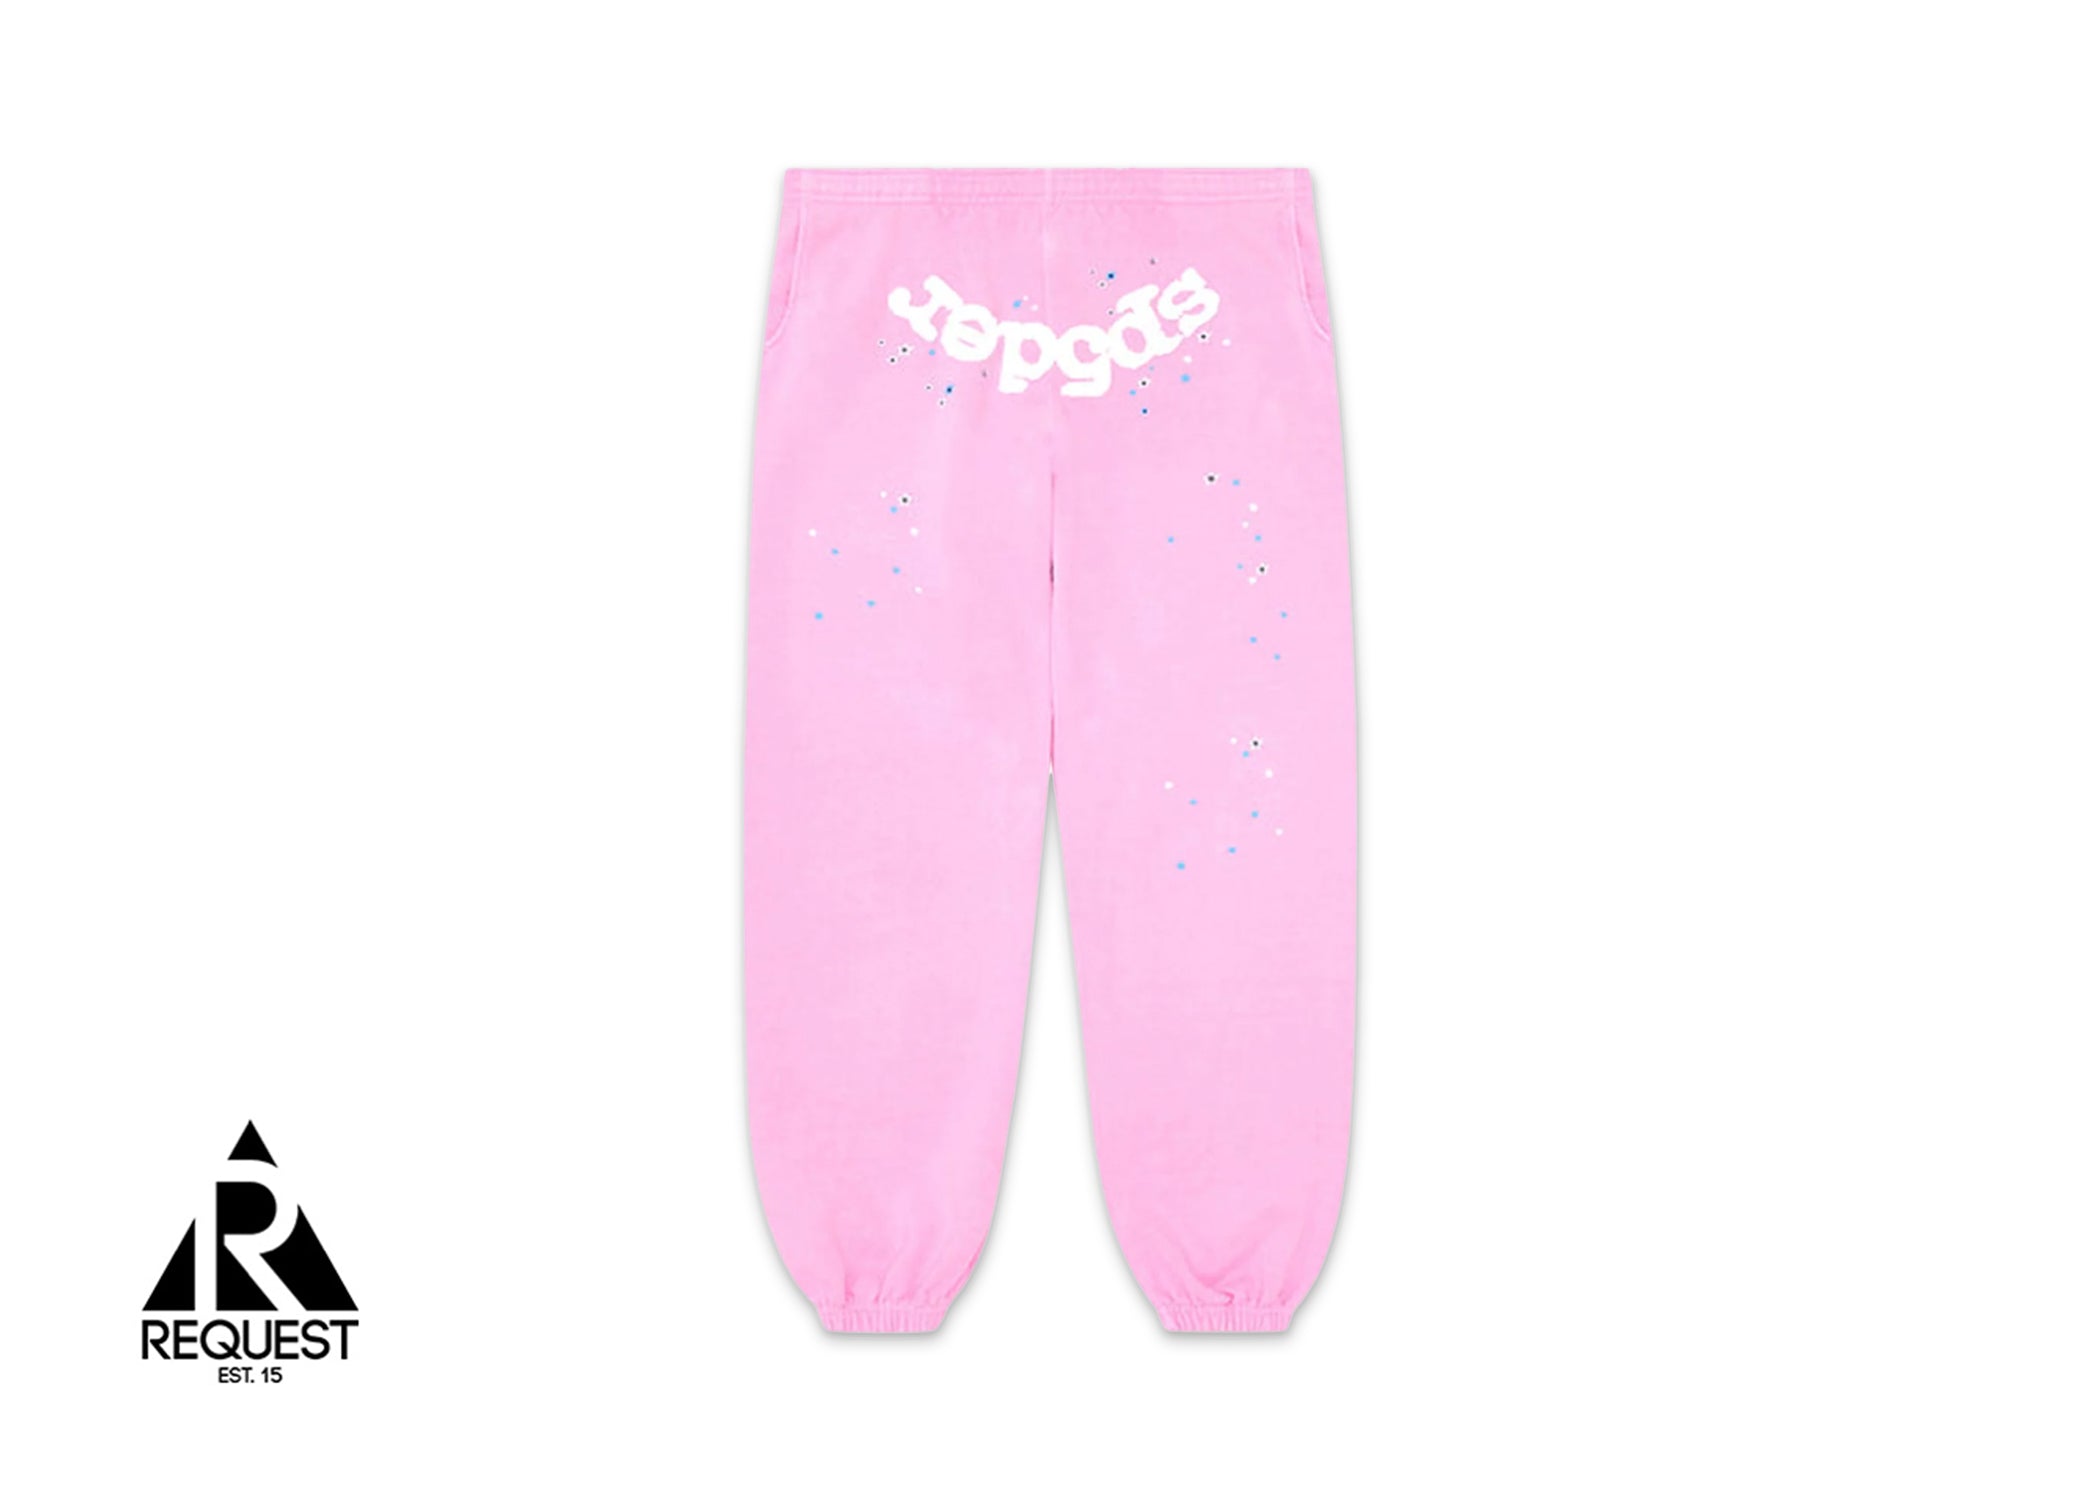 Sp5der OG Web Sweatpants "Pink"